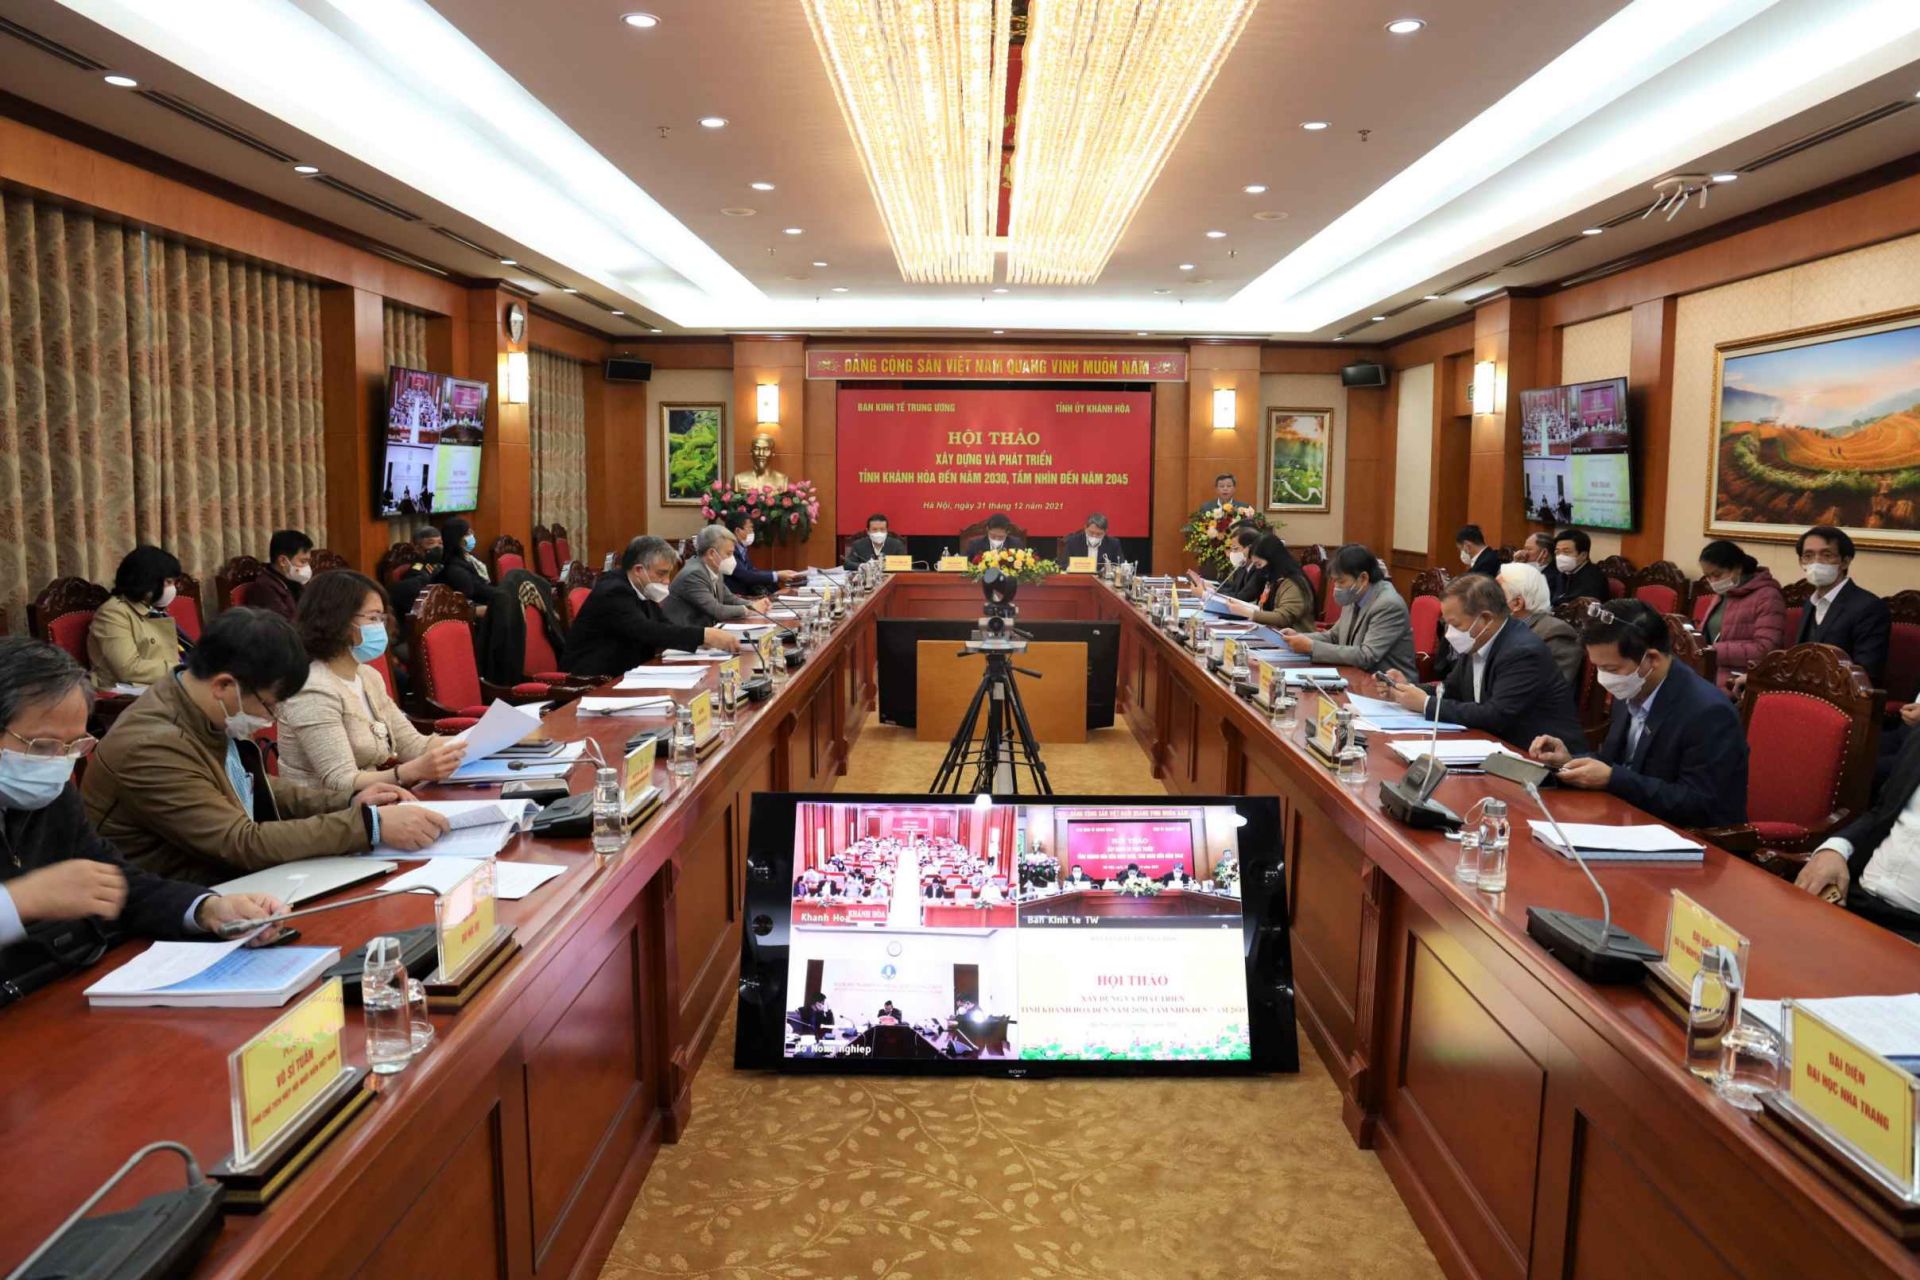 Hội thảo lấy ý kiến hoàn thiện Báo cáo Tổng kết Kết luận số 53-KL/TW về xây dựng, phát triển tỉnh Khánh Hòa đến năm 2020 và tầm nhìn đến năm 2030 của Bộ Chính trị khóa XI